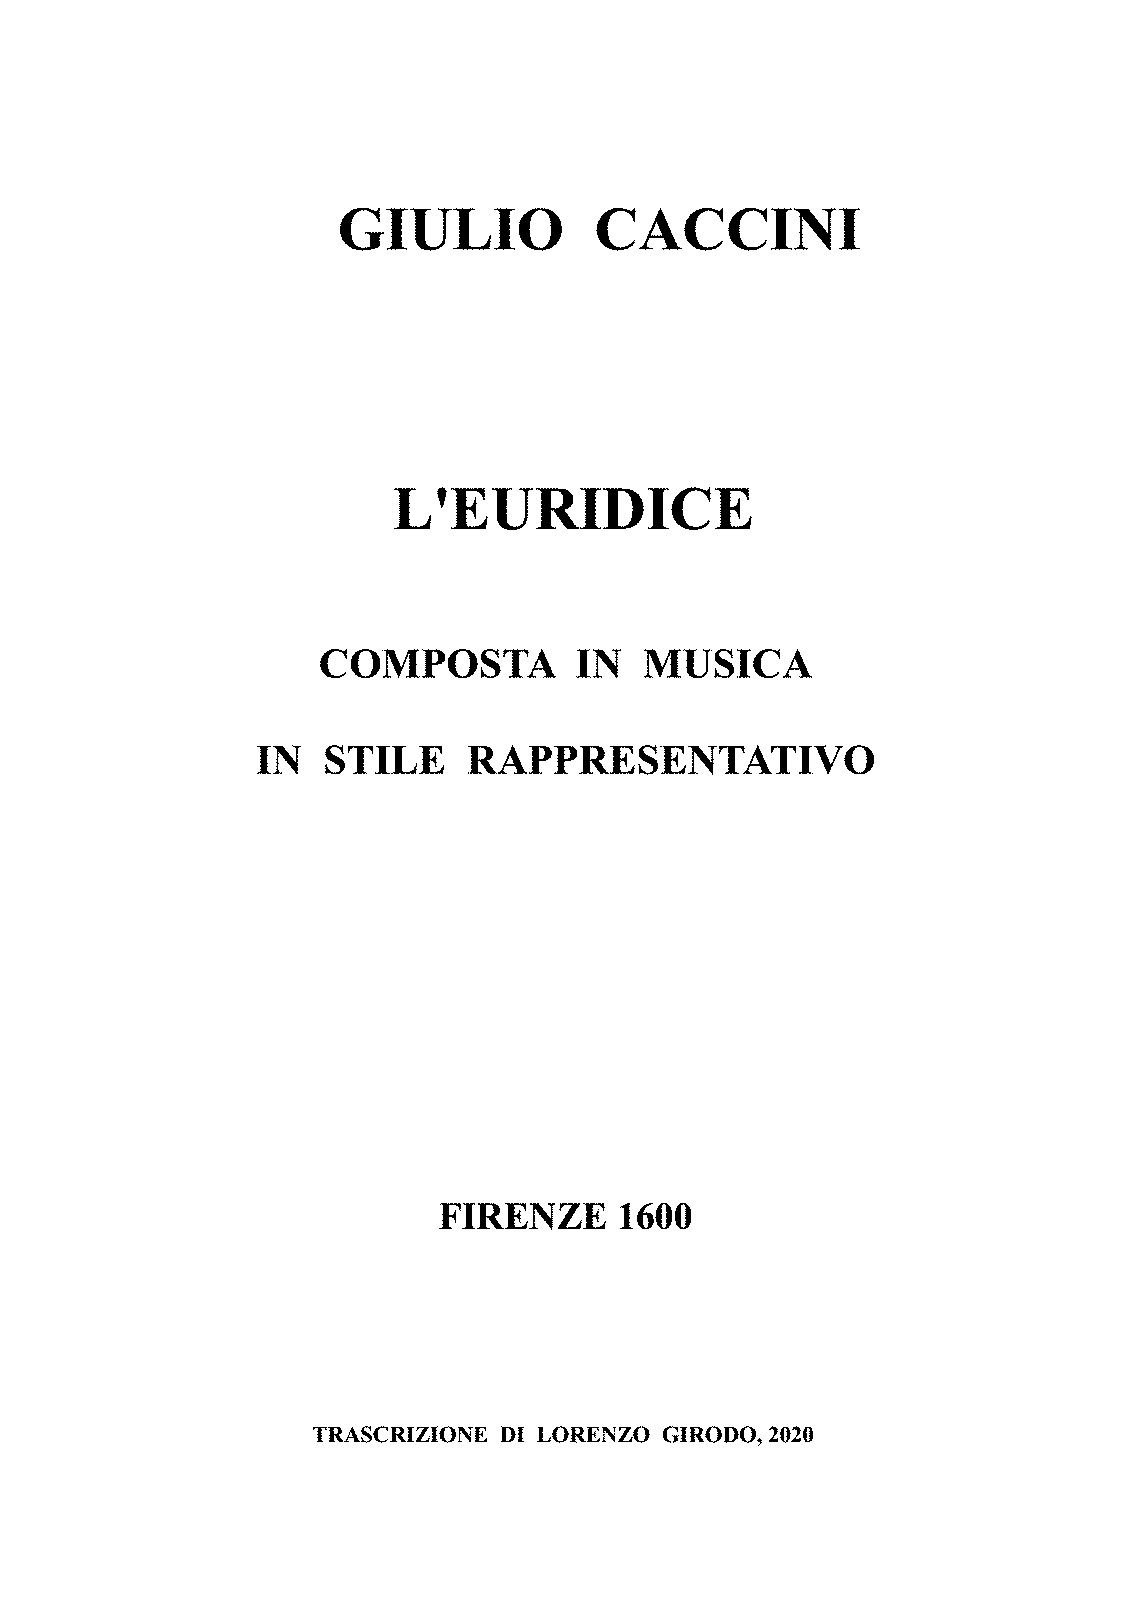 Euridice (Caccini, Giulio) - IMSLP